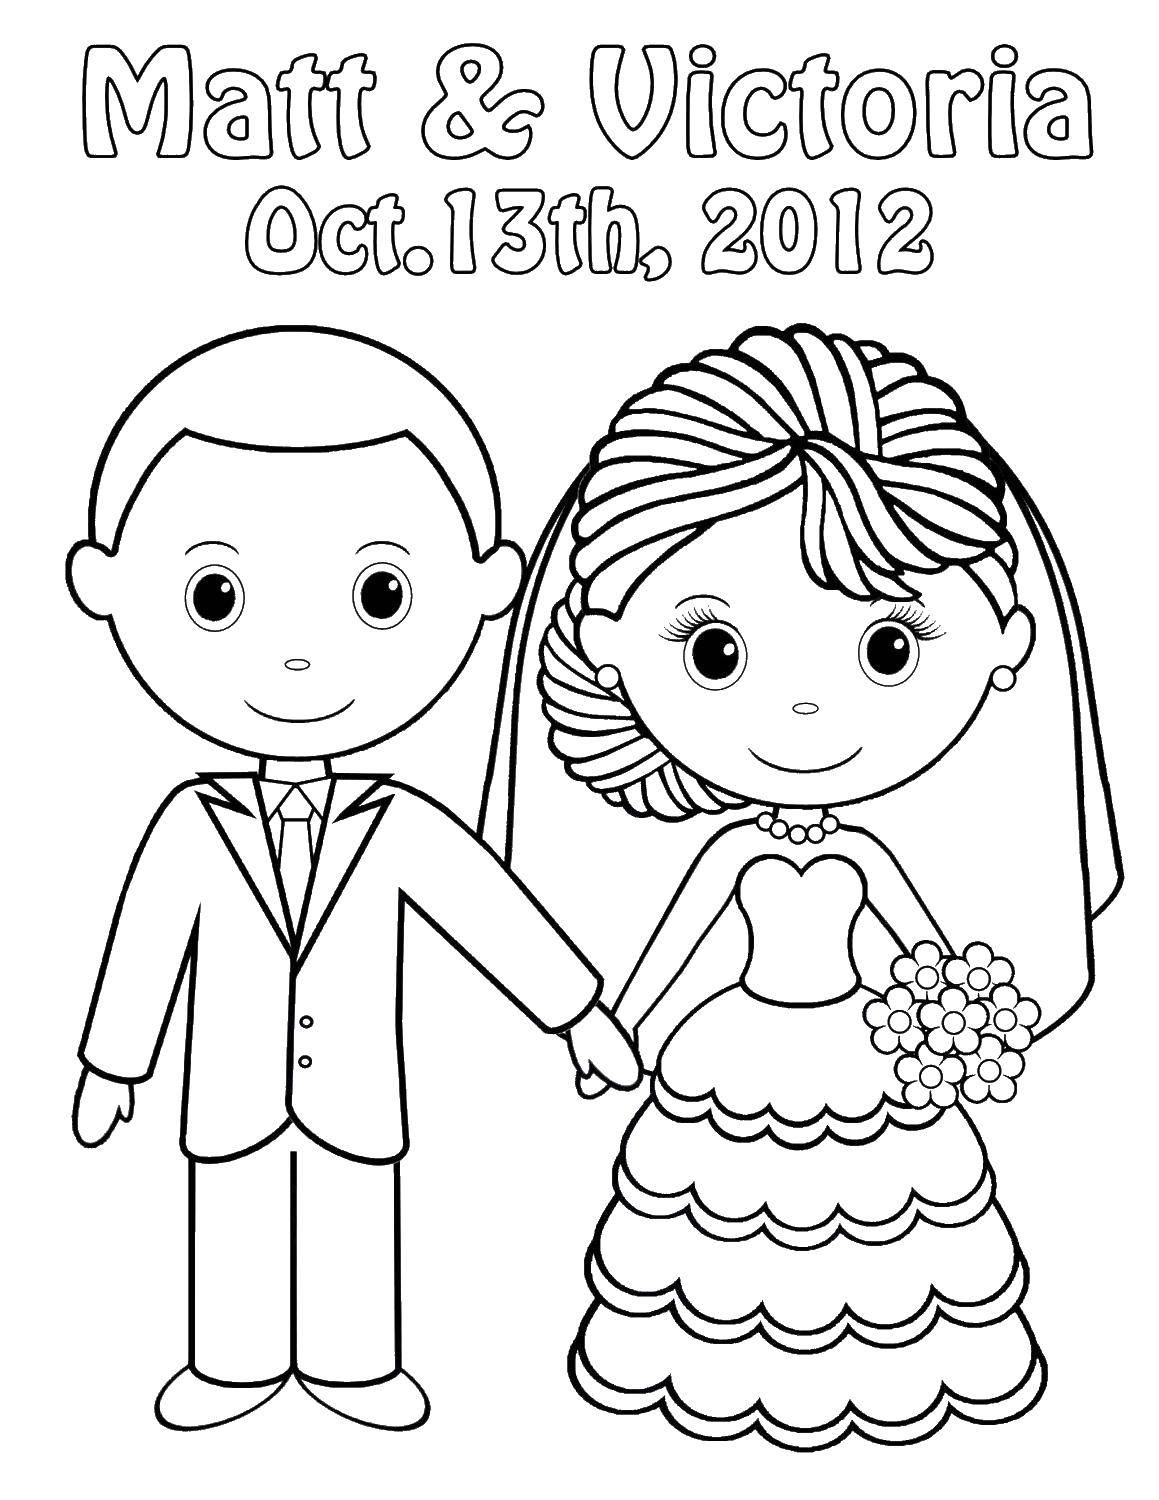 Coloring Wedding. Category Wedding. Tags:  wedding, bride, groom.